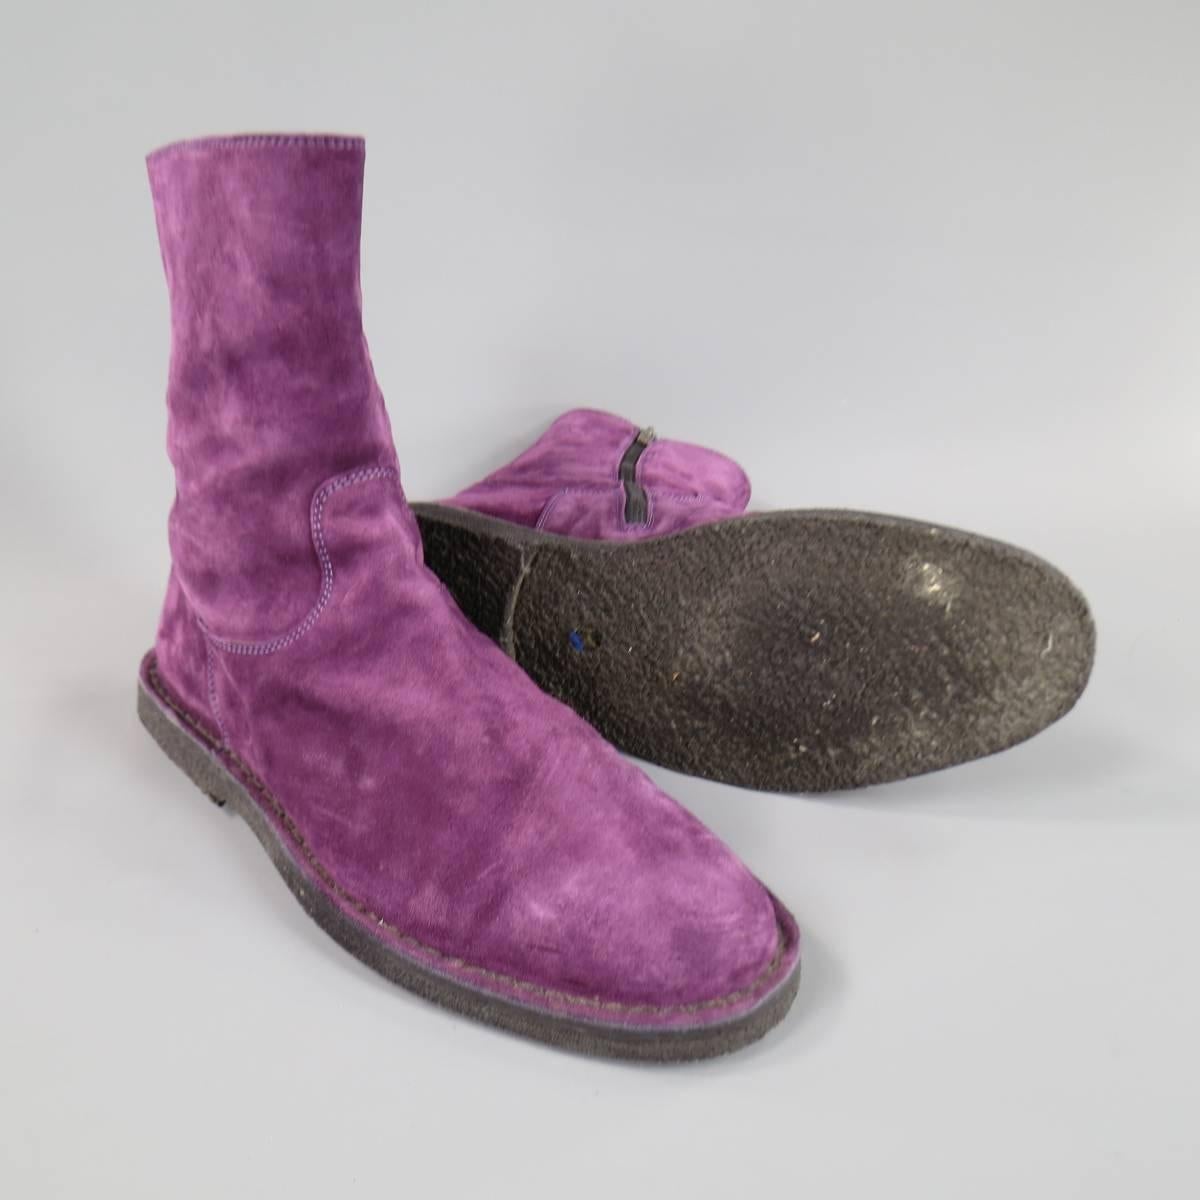 mens purple suede shoes